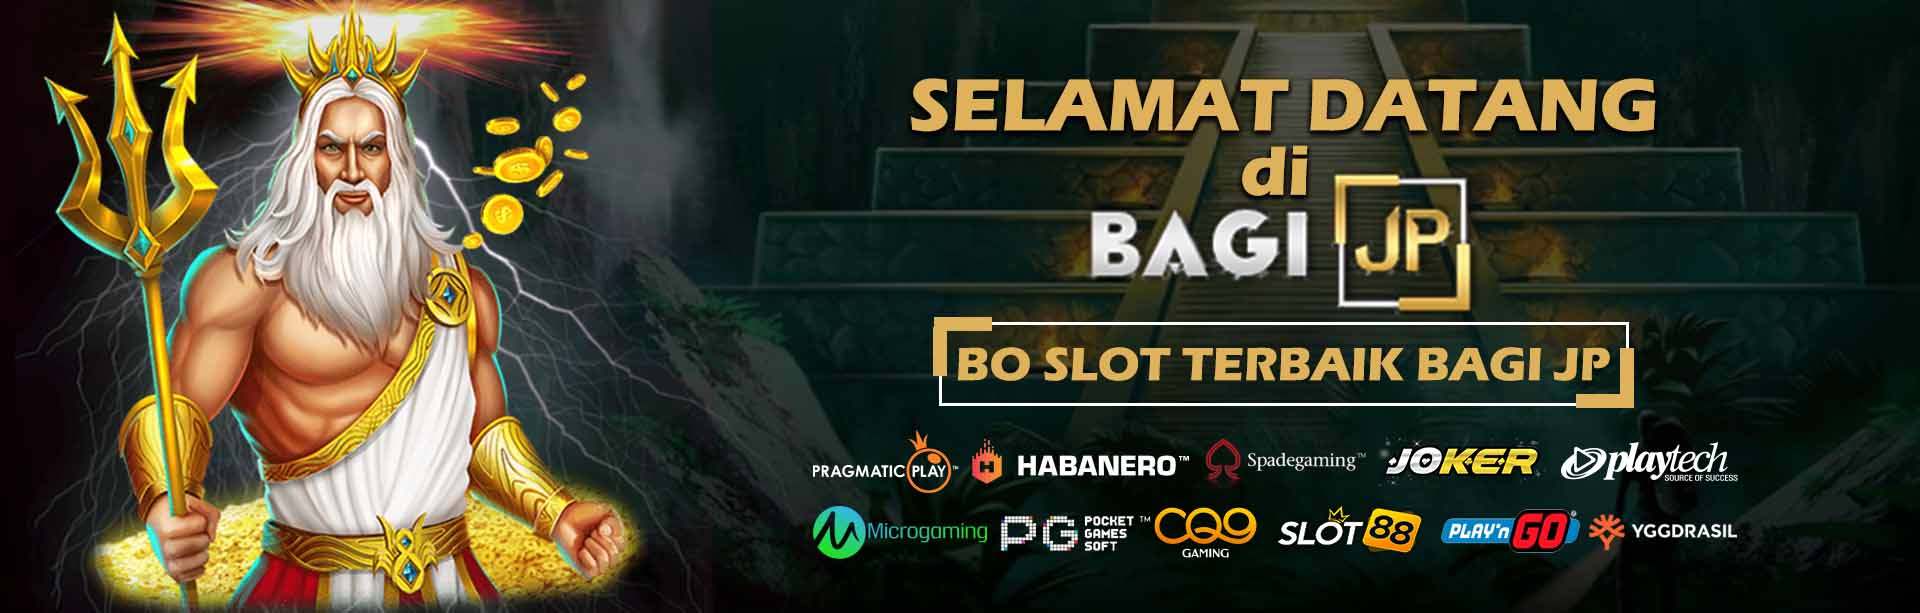 BO Slot Terbaik Indonesia Bagi JP Banyak Bonus Mingguan